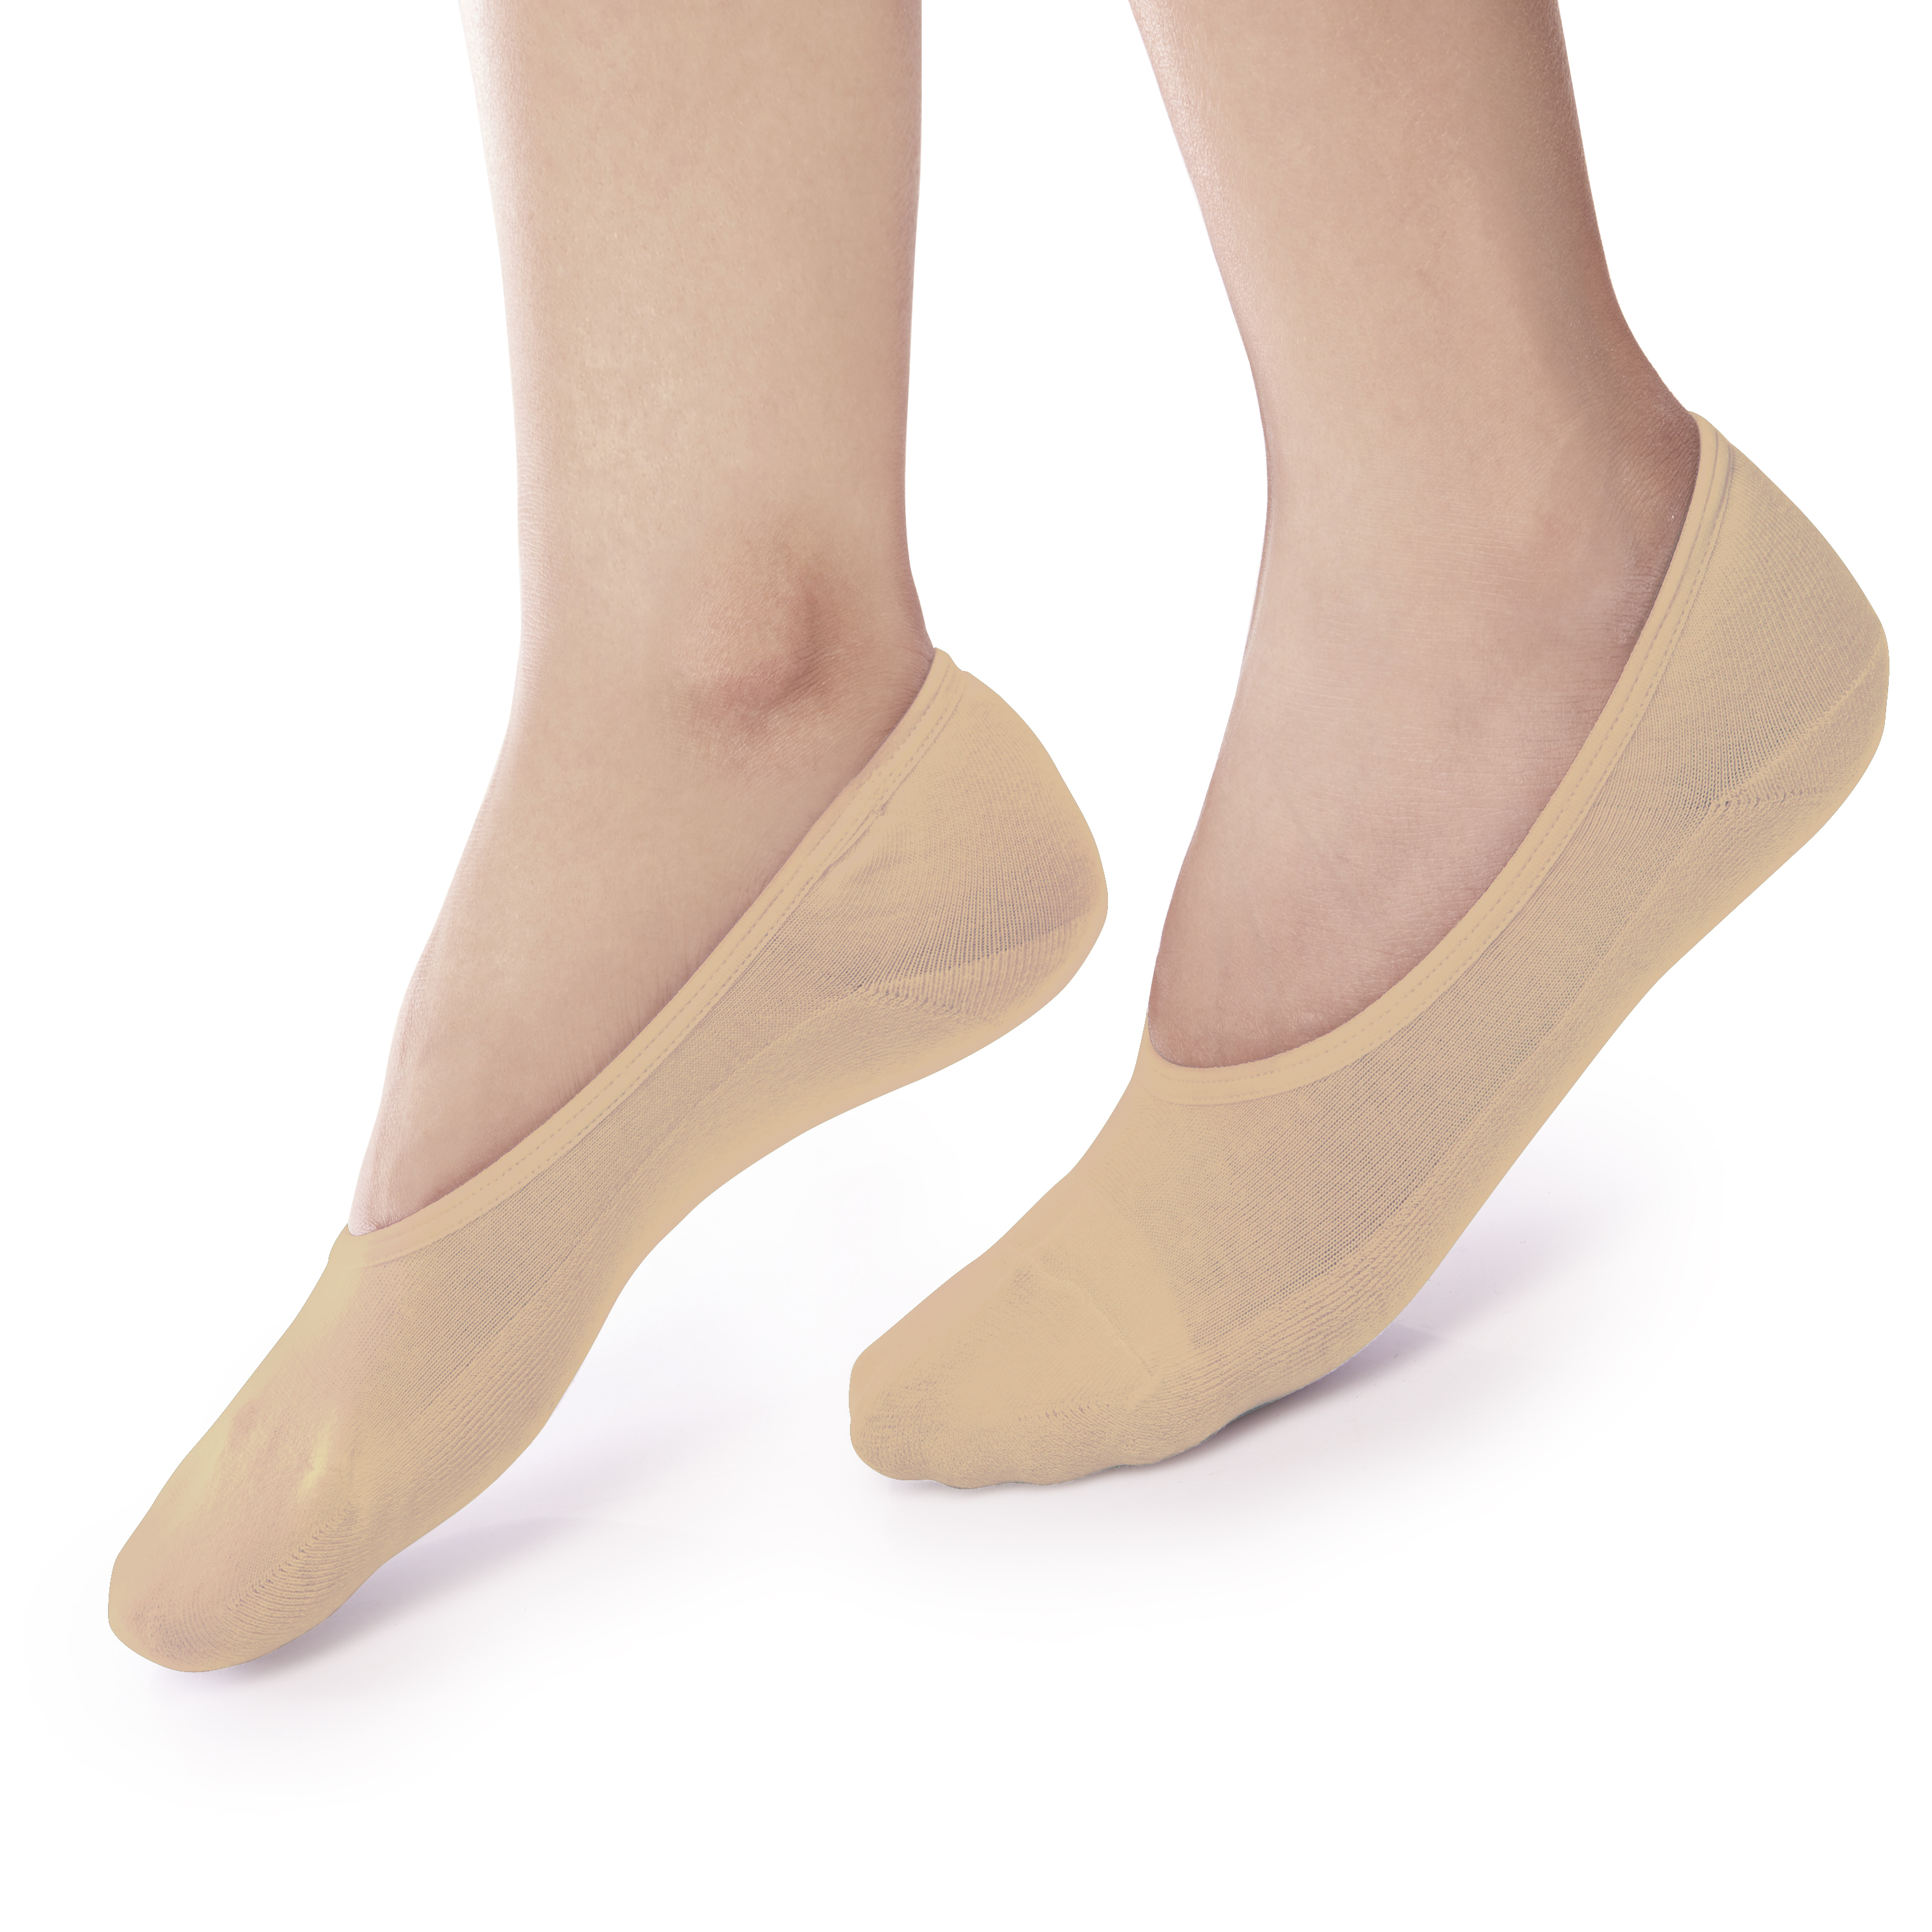 ถุงเท้ารองส้น แบบเปิดหน้าเท้า สีเนื้อ รหัส NEFC01